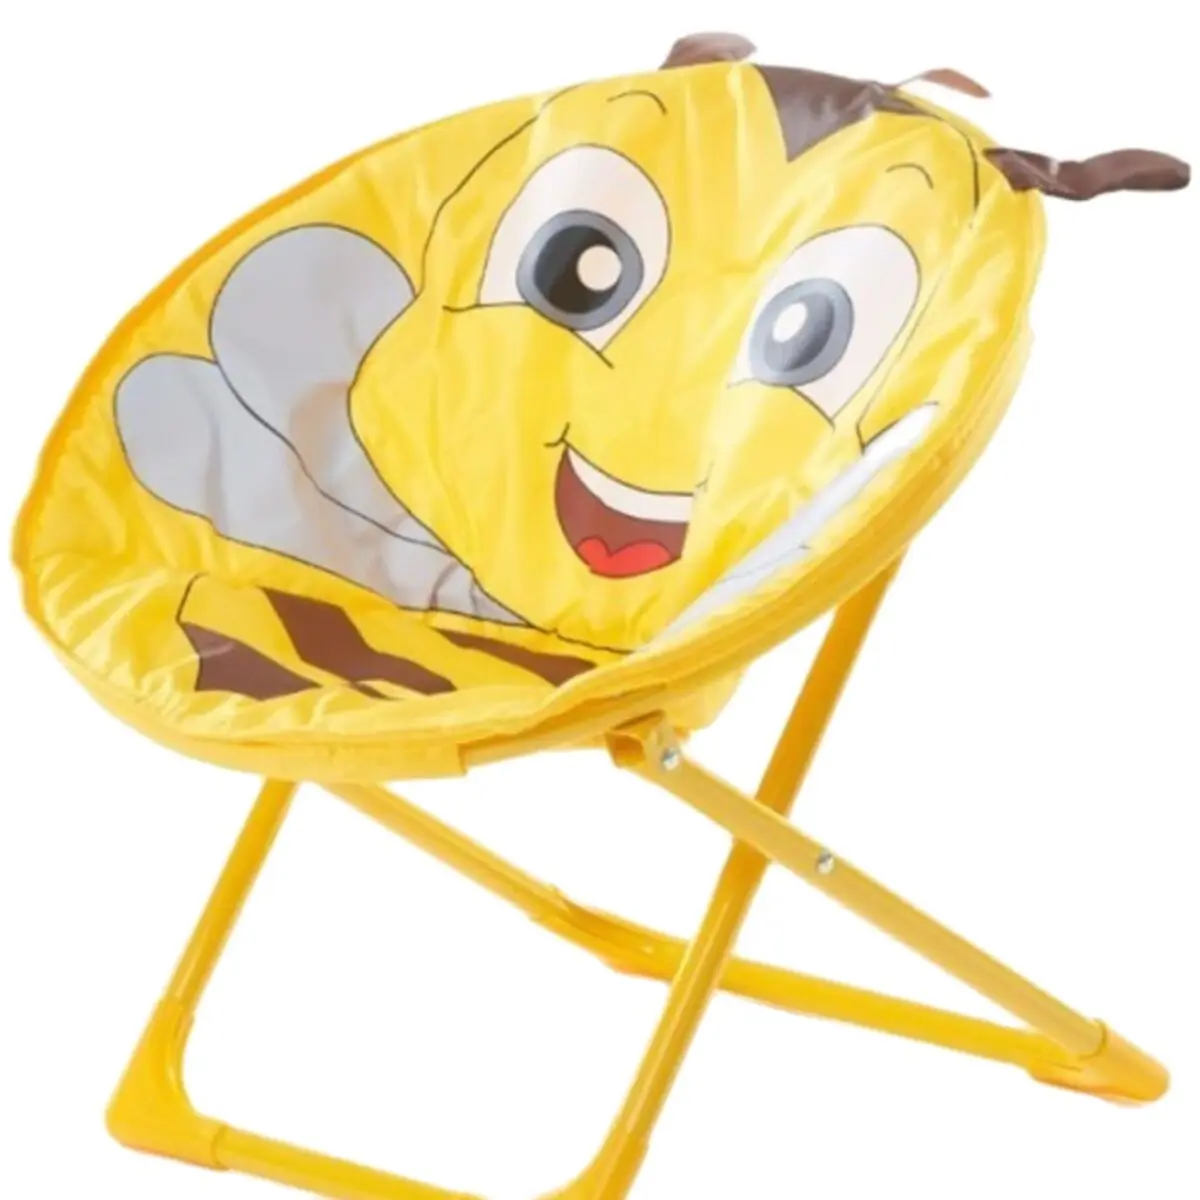 Tanio Krzesło dziecięce księżycowe stołek dziecięcy krzesełko dla dziecka składane